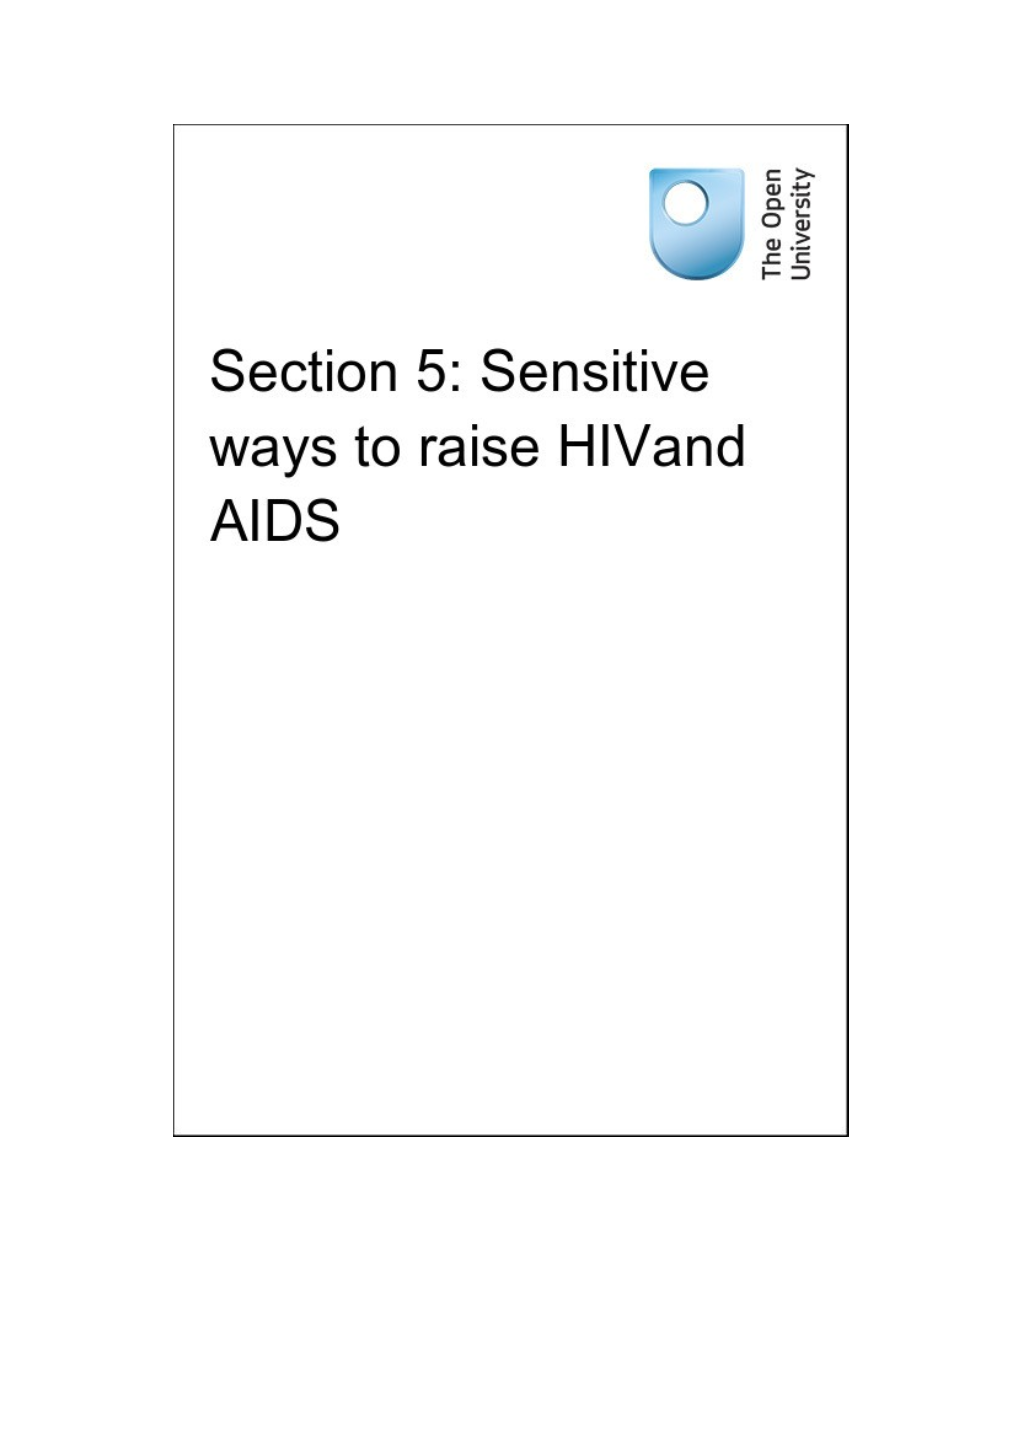 Section 5: Sensitive Ways to Raise Hivand AIDS